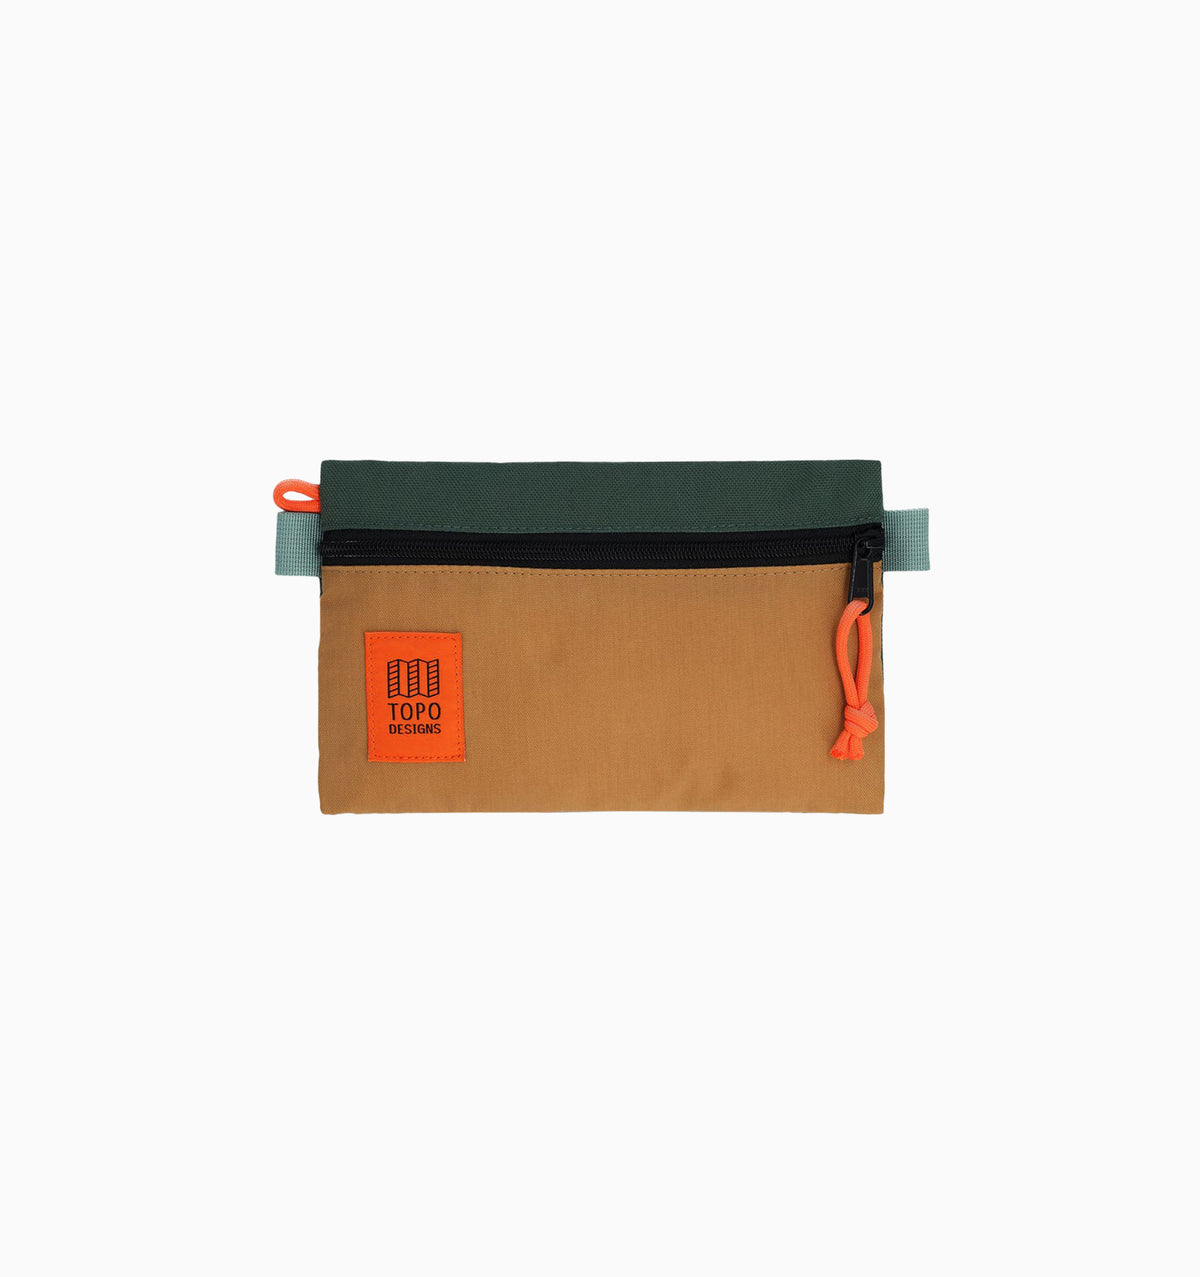 Topo Designs Small Accessory Bag - Forest/Khaki